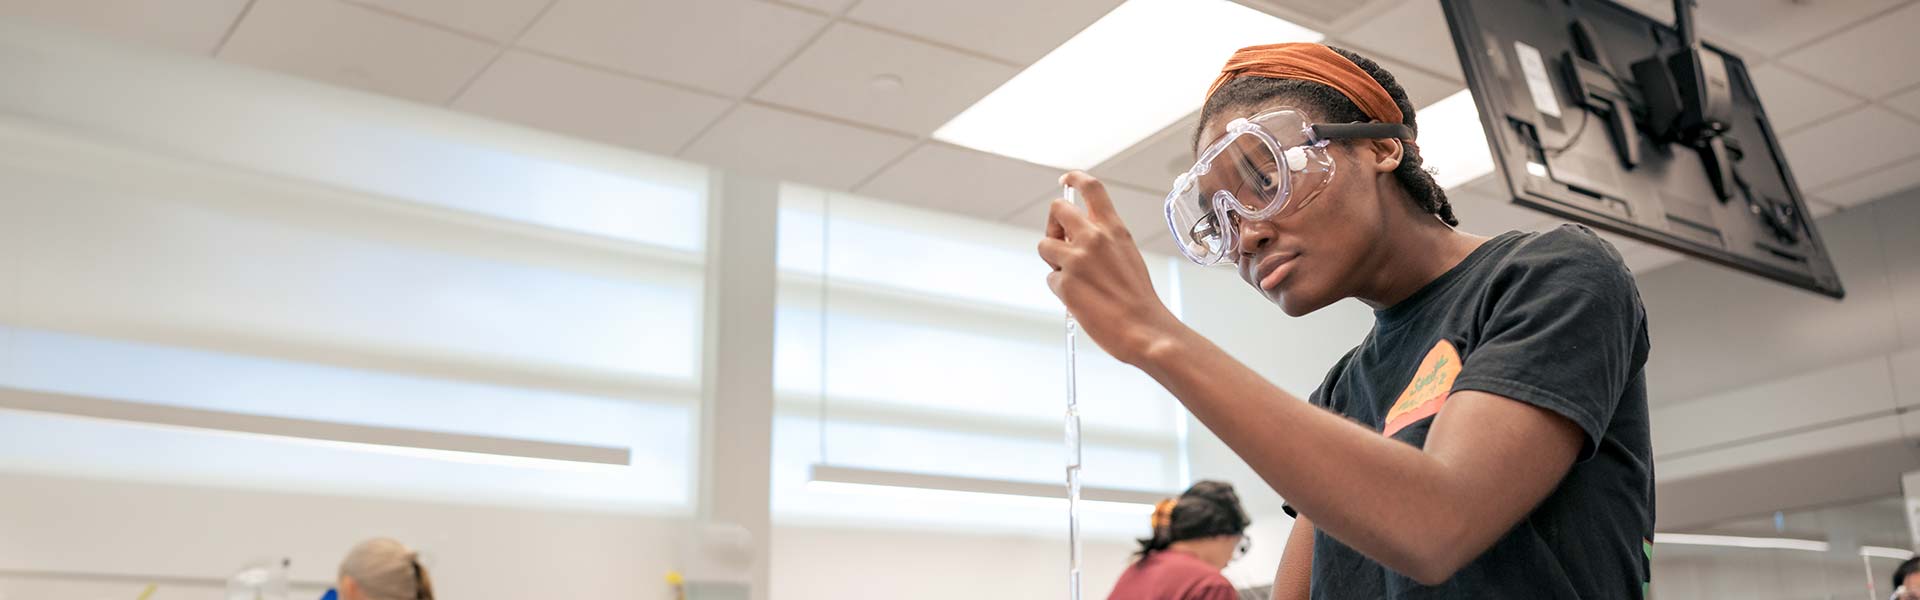 Student measuring liquid in science lab